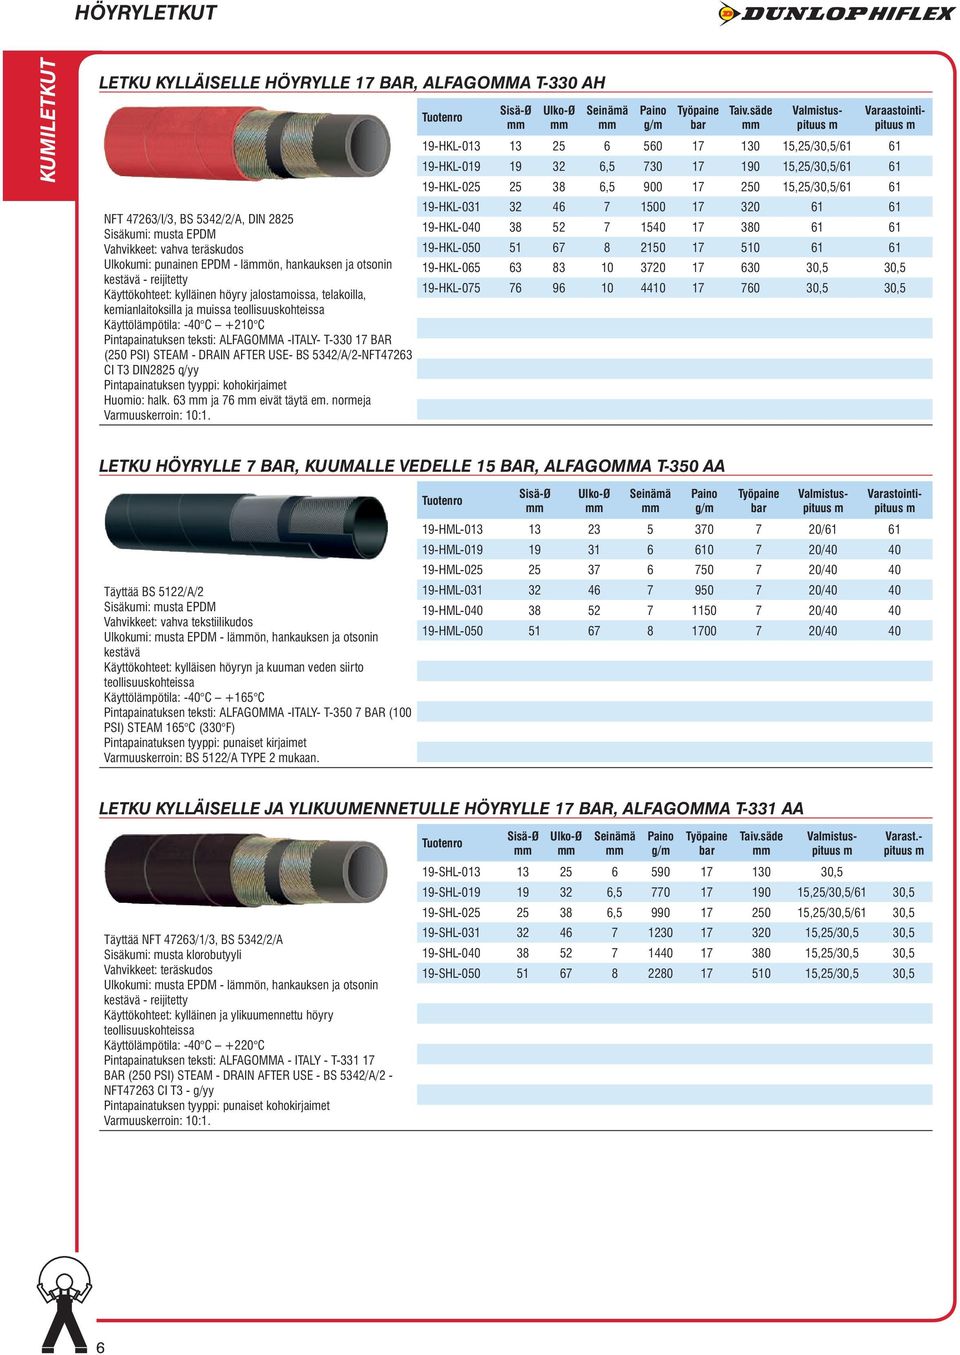 teksti: ALFAGOMMA -ITALY- T-330 17 BAR (250 PSI) STEAM - DRAIN AFTER USE- BS 5342/A/2-NFT47263 CI T3 DIN2825 q/yy Pintapainatuksen tyyppi: kohokirjaiet Huoio: halk. 63 ja 76 eivät täytä e.